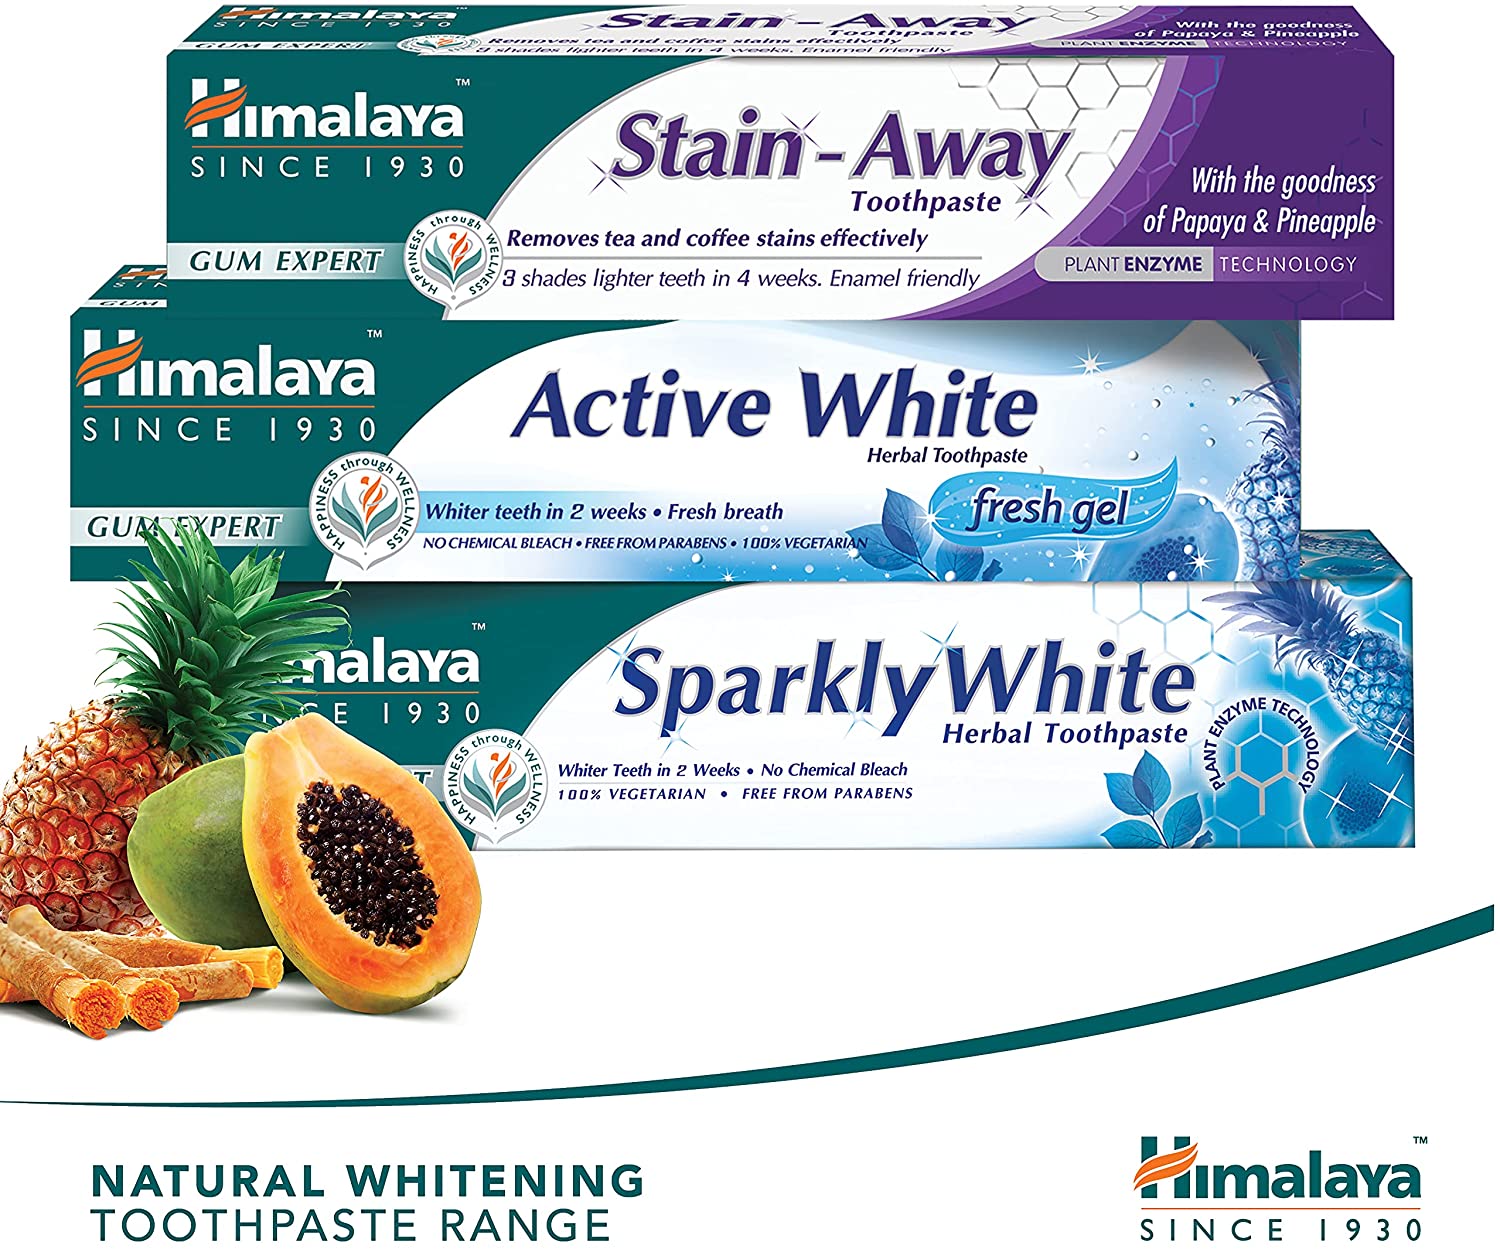 Himalaya Natural Whitening Toothpaste Range